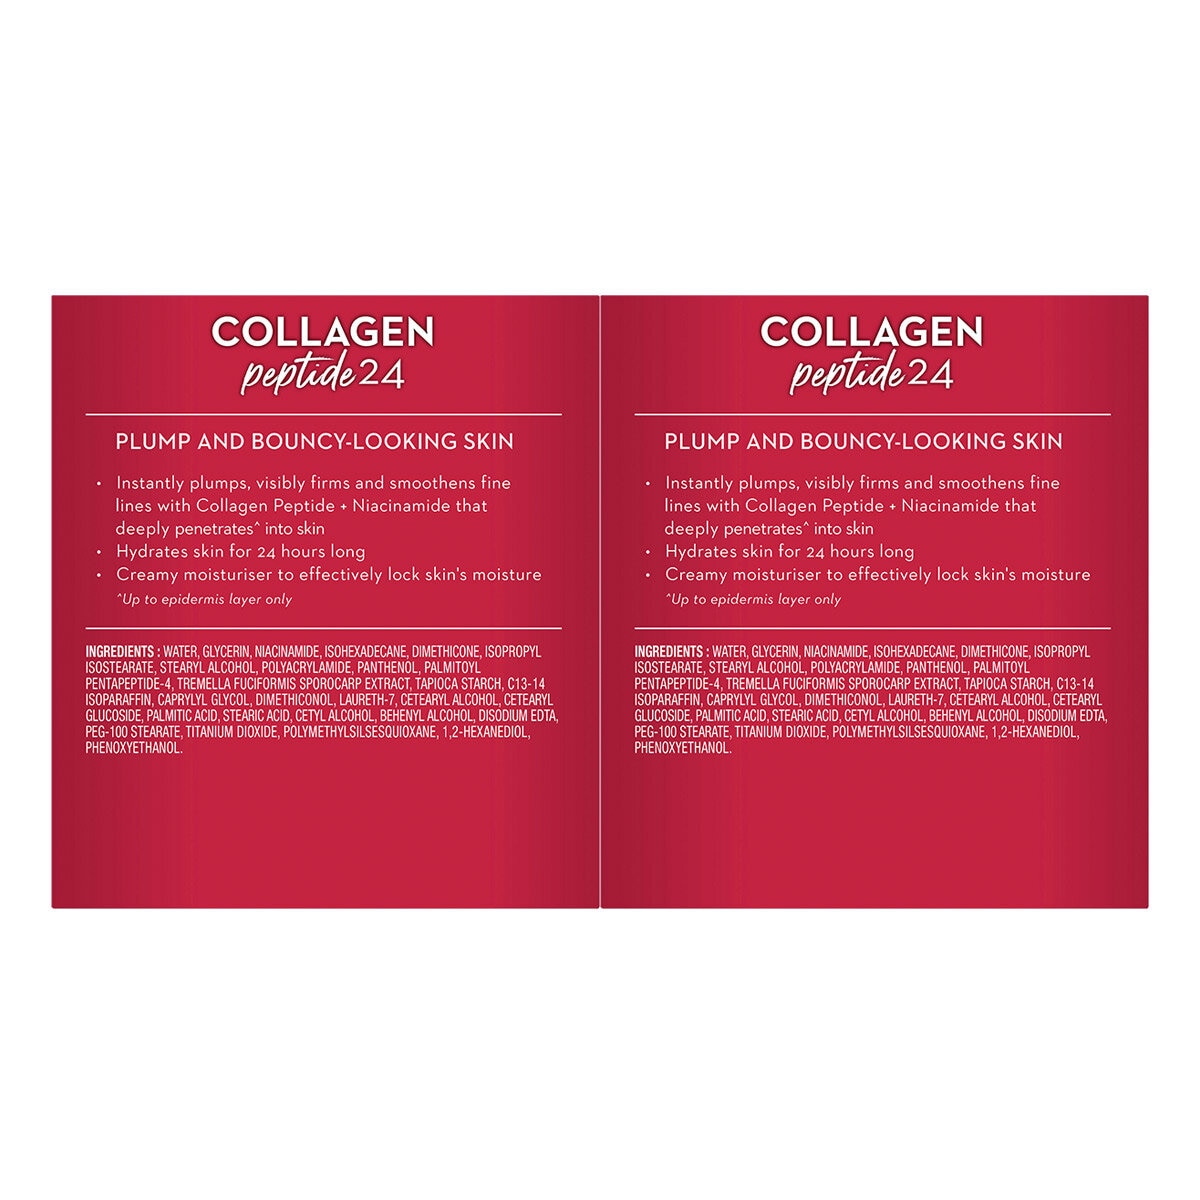 Olay Regenerist Collagen Peptide24 Moisturiser 2 x 50g